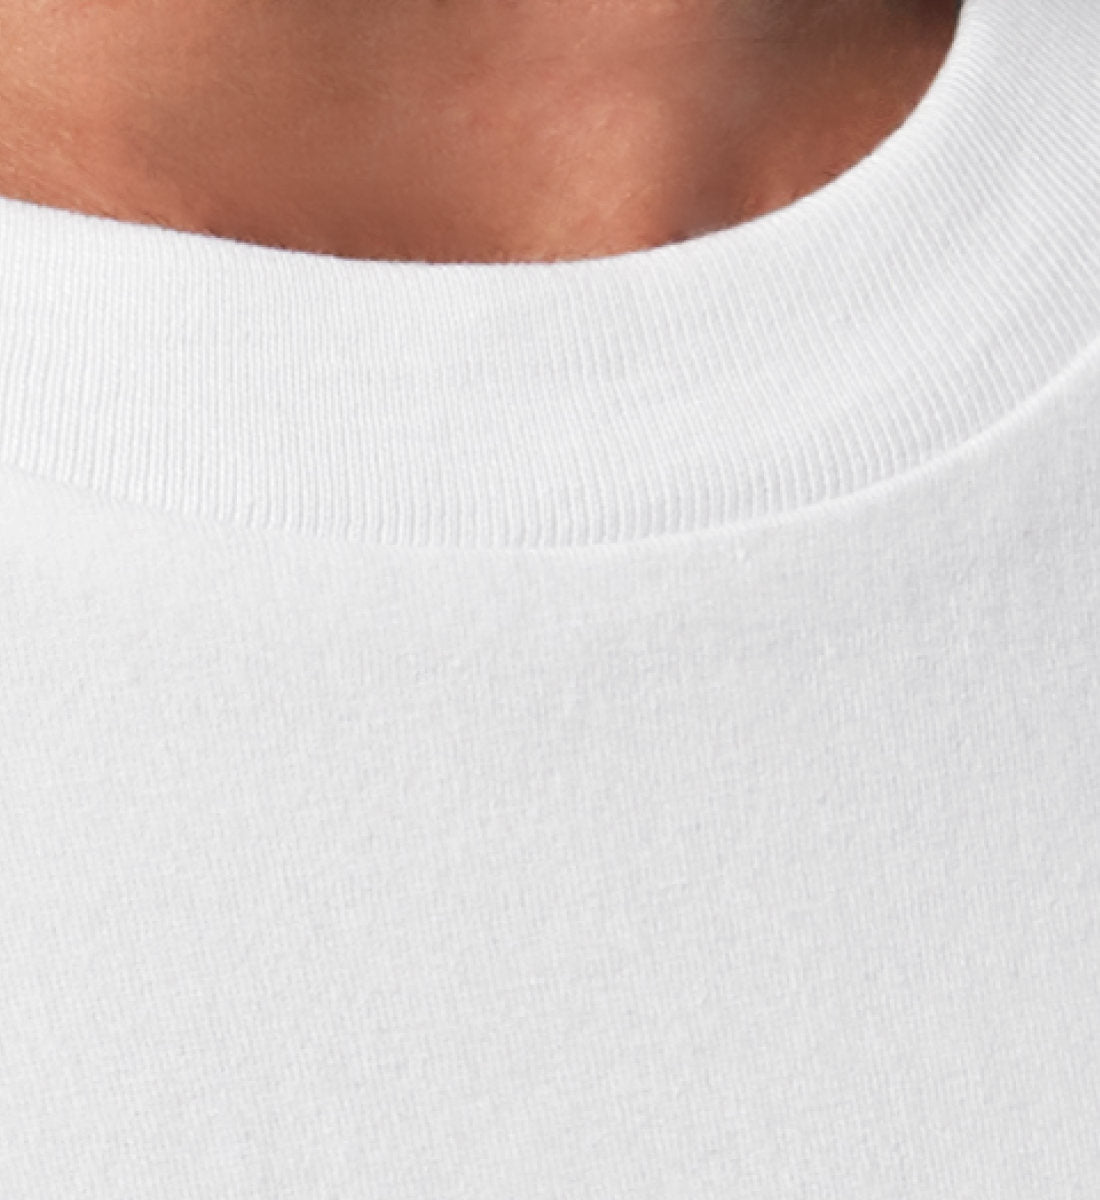 Weißes T-Shirt Unisex Relaxed Fit für Frauen und Männer bedruckt mit dem Design der Roger Rockawoo Kollektion Boxing Stare Down unstoppable relentless determined